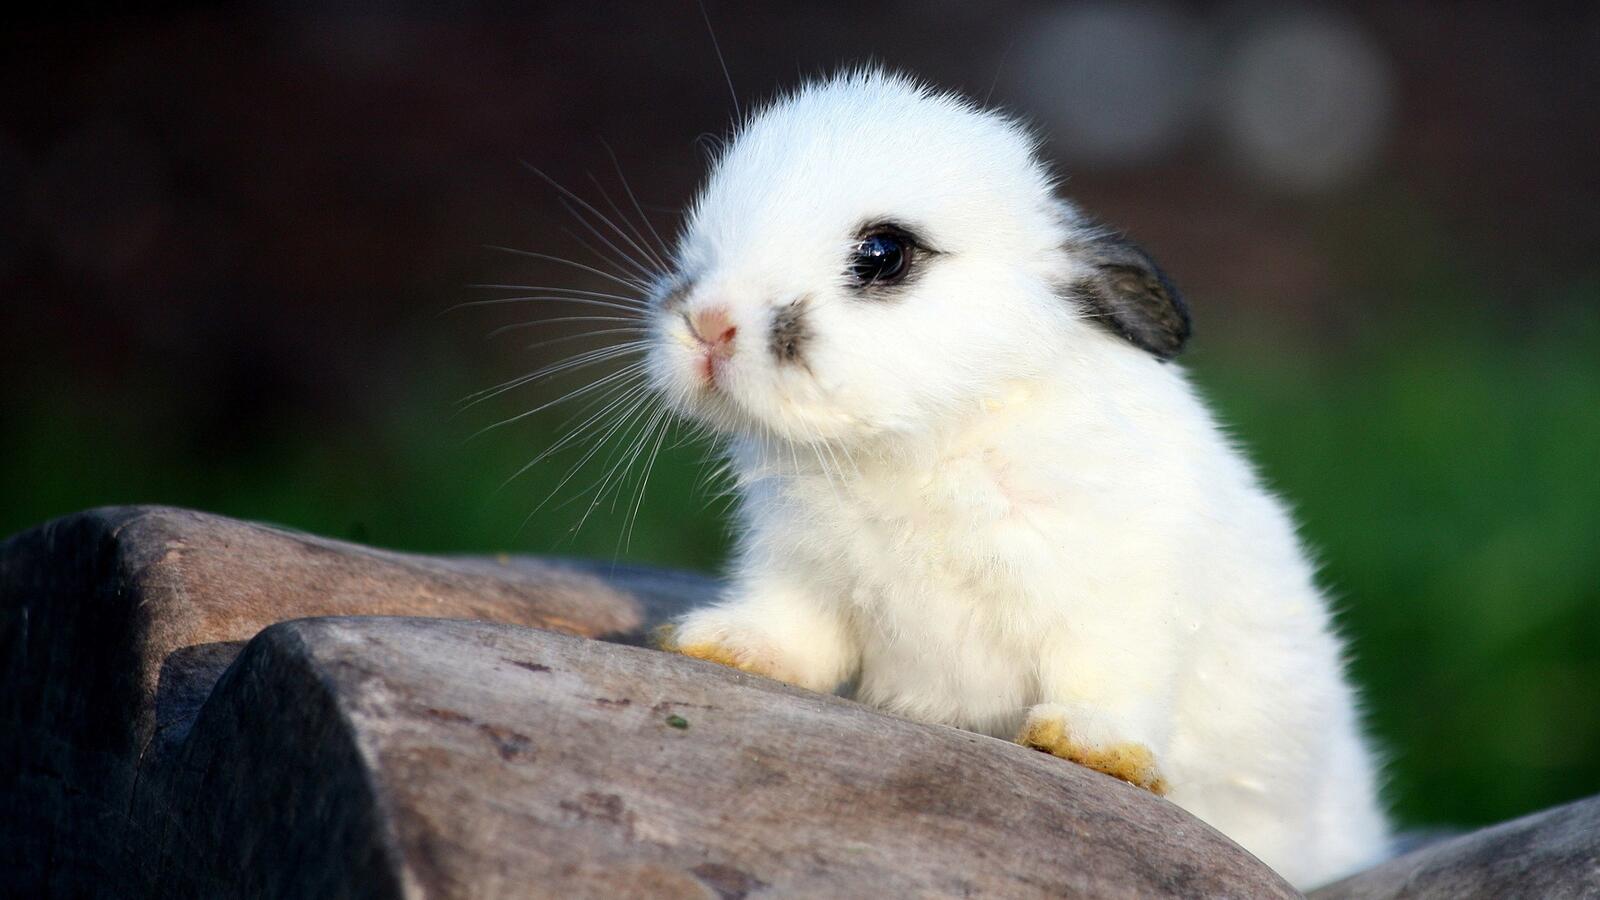 免费照片一张可爱小白兔的照片。